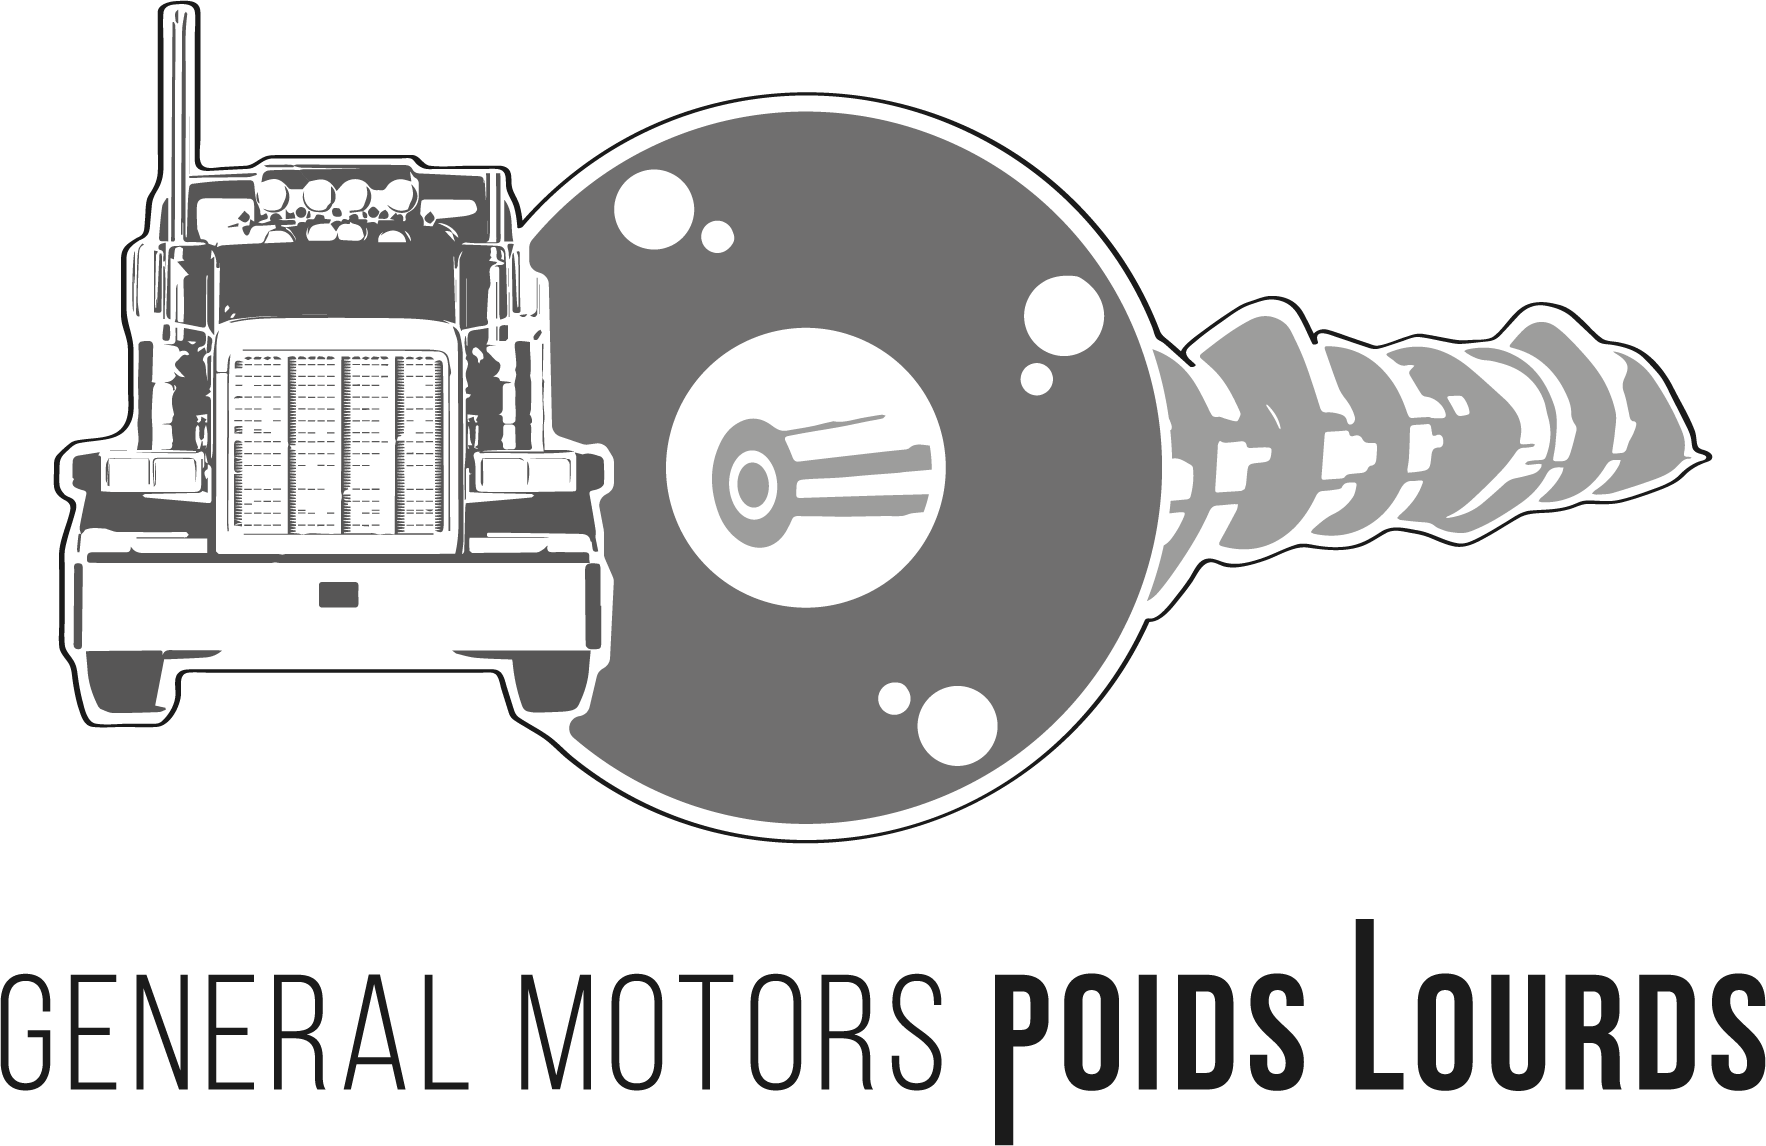 General Motors Poids Lourds